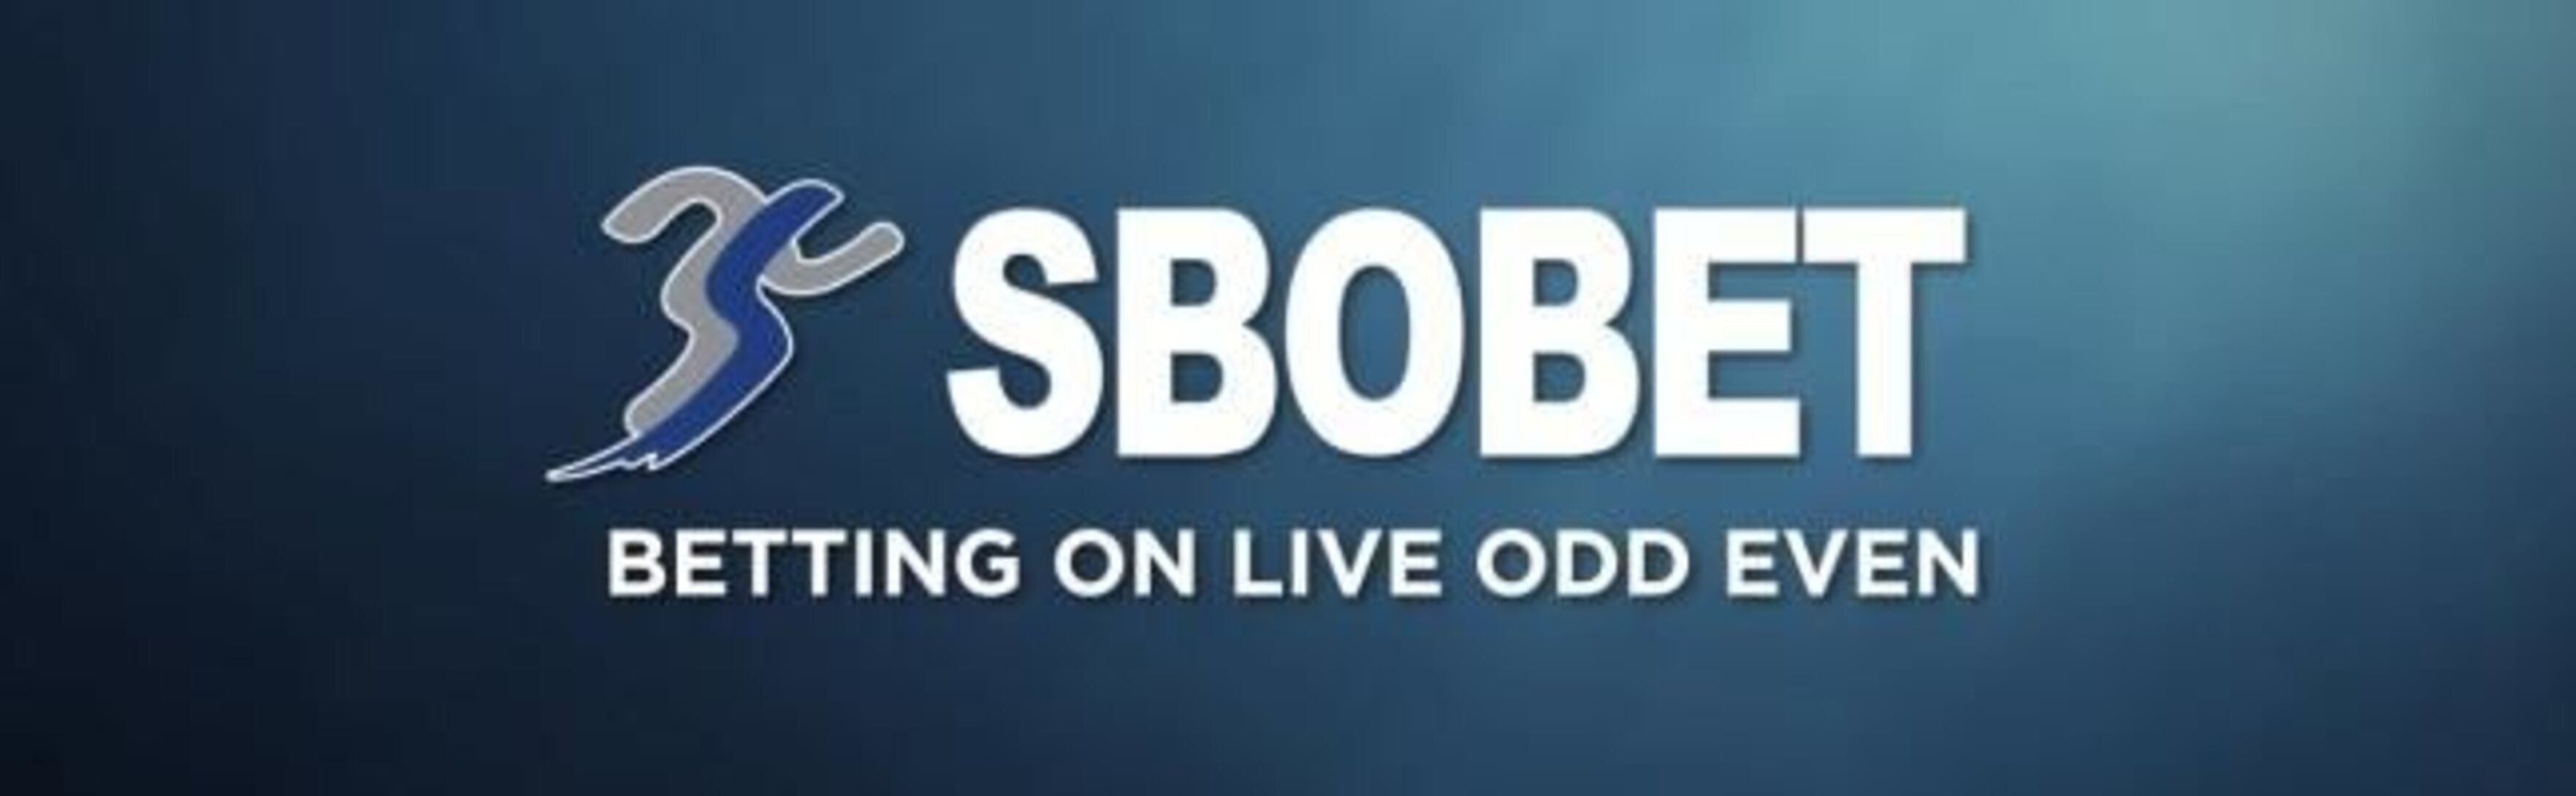 Sbobet дарит до 200 евро на первый депозит 